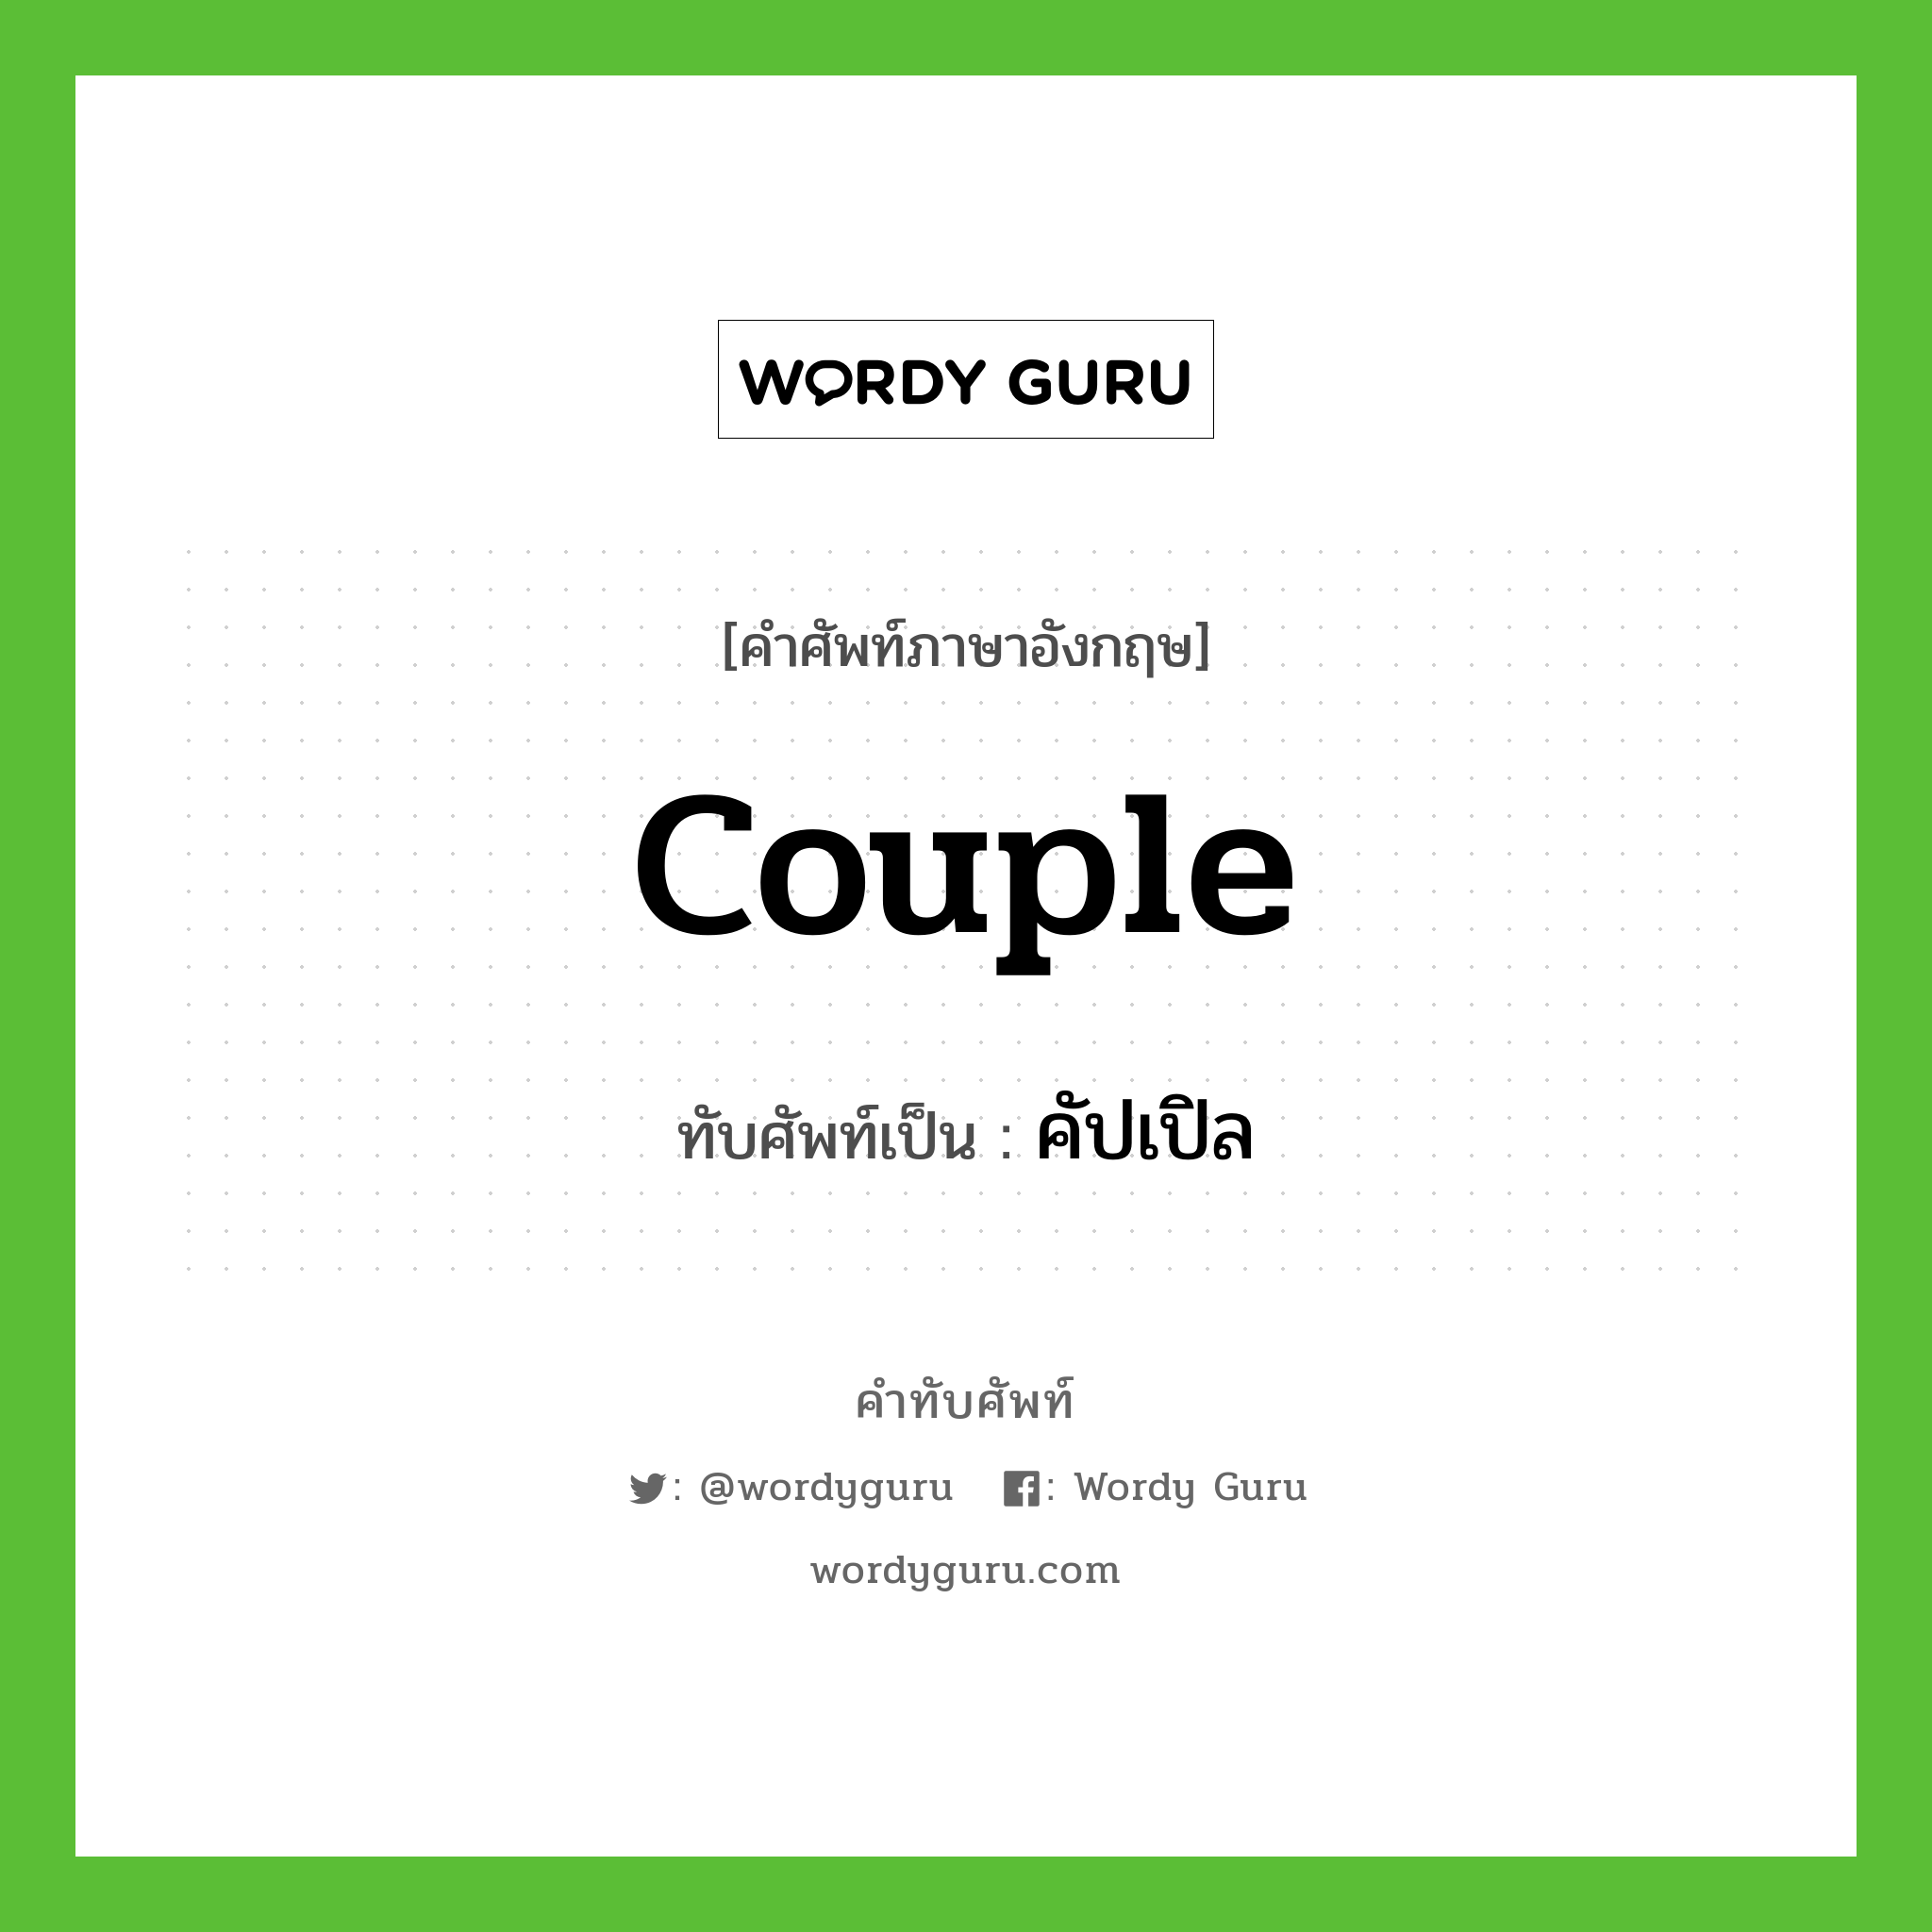 couple เขียนเป็นคำไทยว่าอะไร?, คำศัพท์ภาษาอังกฤษ couple ทับศัพท์เป็น คัปเปิล